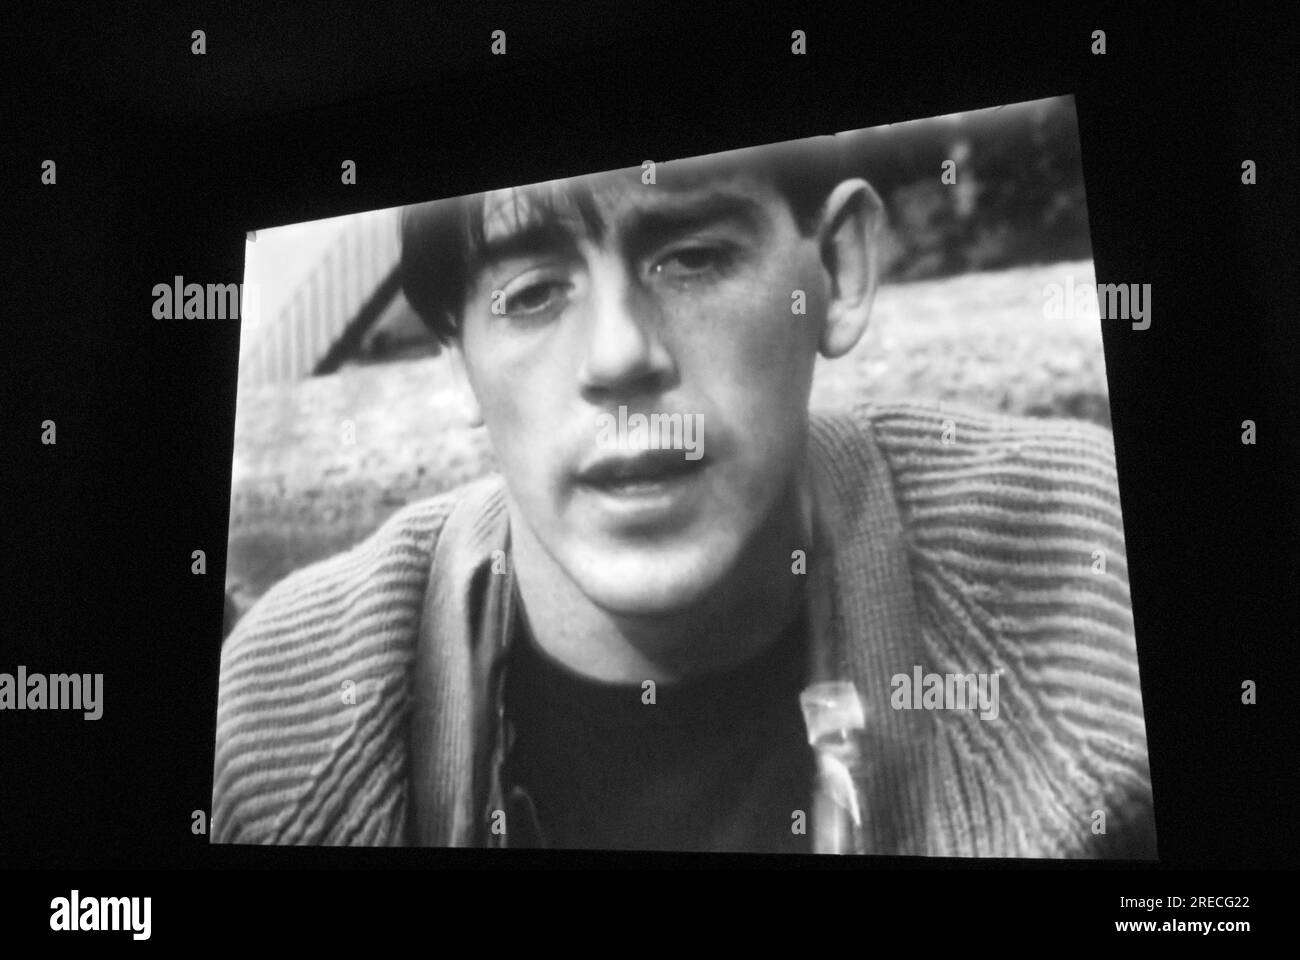 David Hurn, fotografo Magnum nel film degli anni '1960 di Ken Russell, "A House in Bayswater". Immagini tratte da una proiezione cinematografica. Londra, Inghilterra, 26 settembre 2017. HOMER SYKES Foto Stock